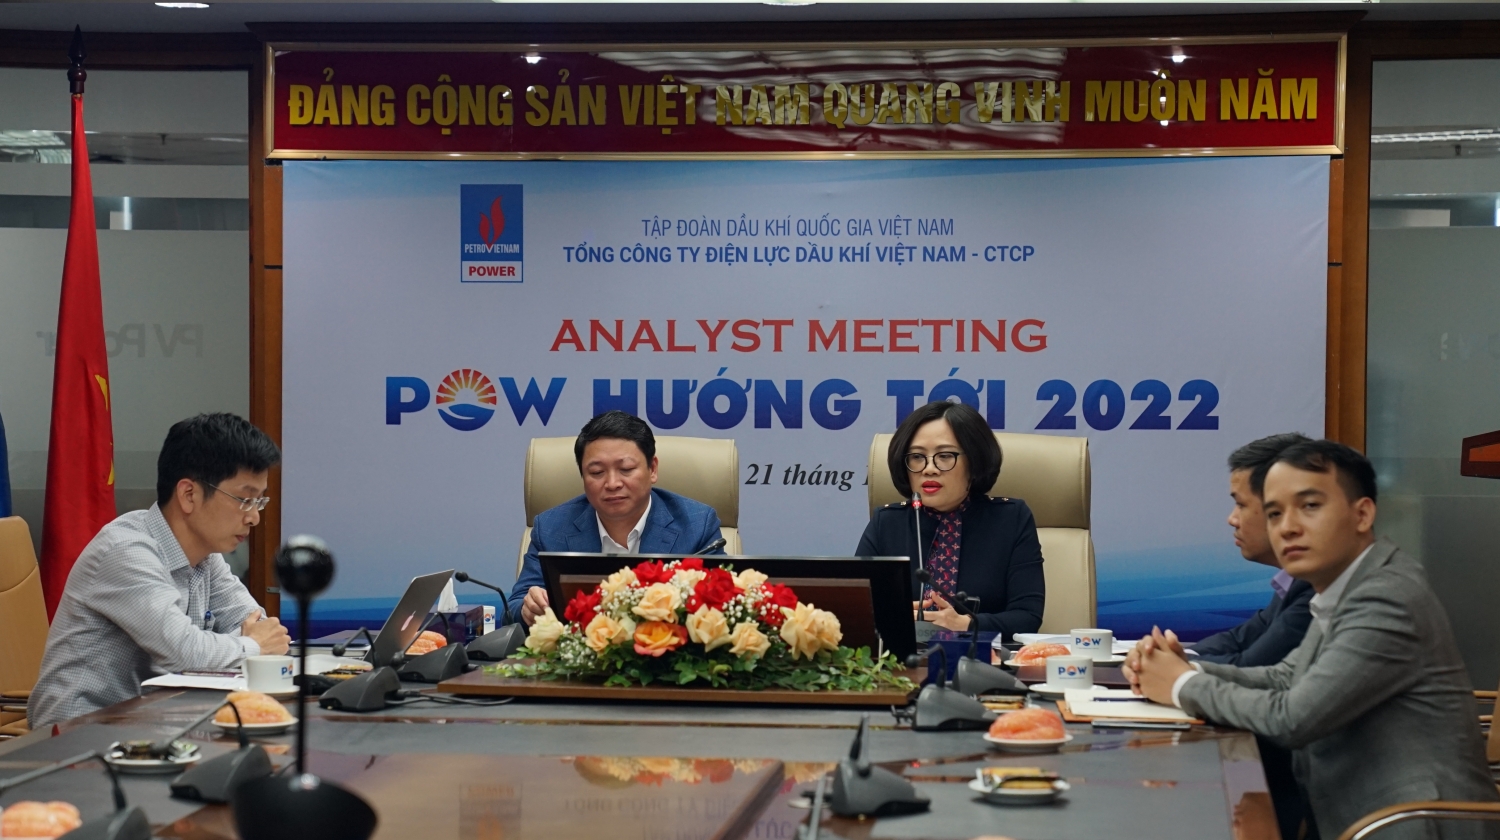 Hội thảo trực tuyến “Analyst Meeting – POW hướng tới 2022”